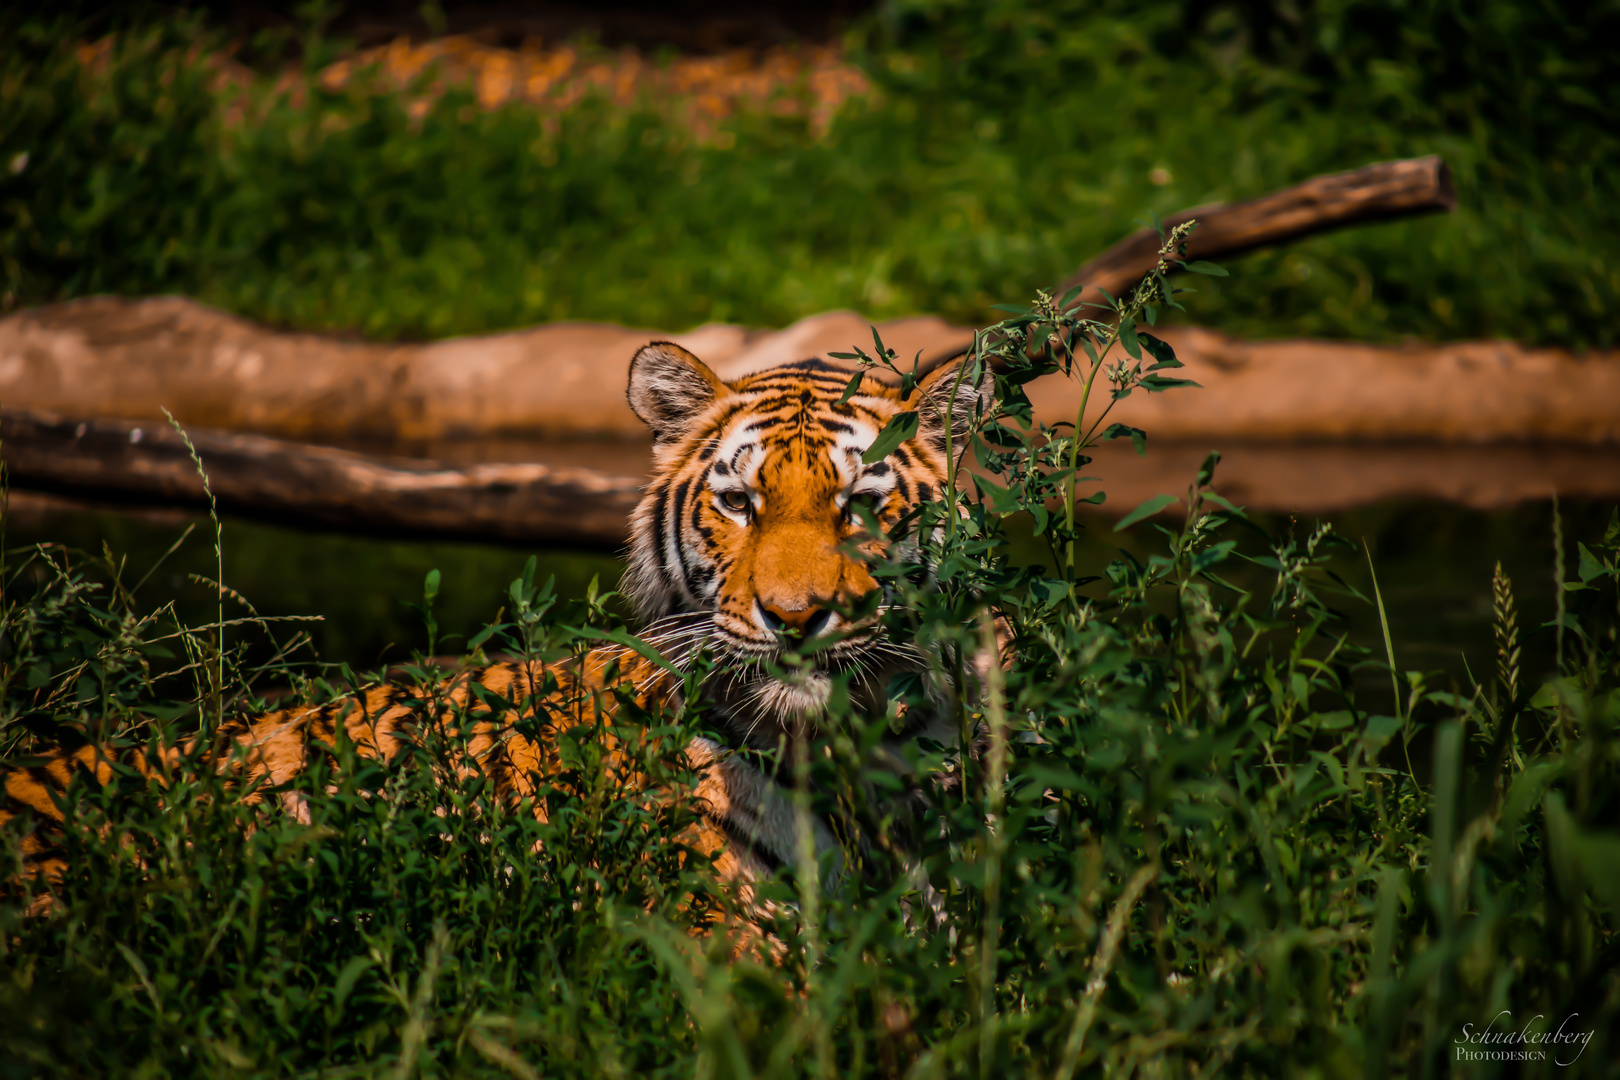 Tiger auf der lauer